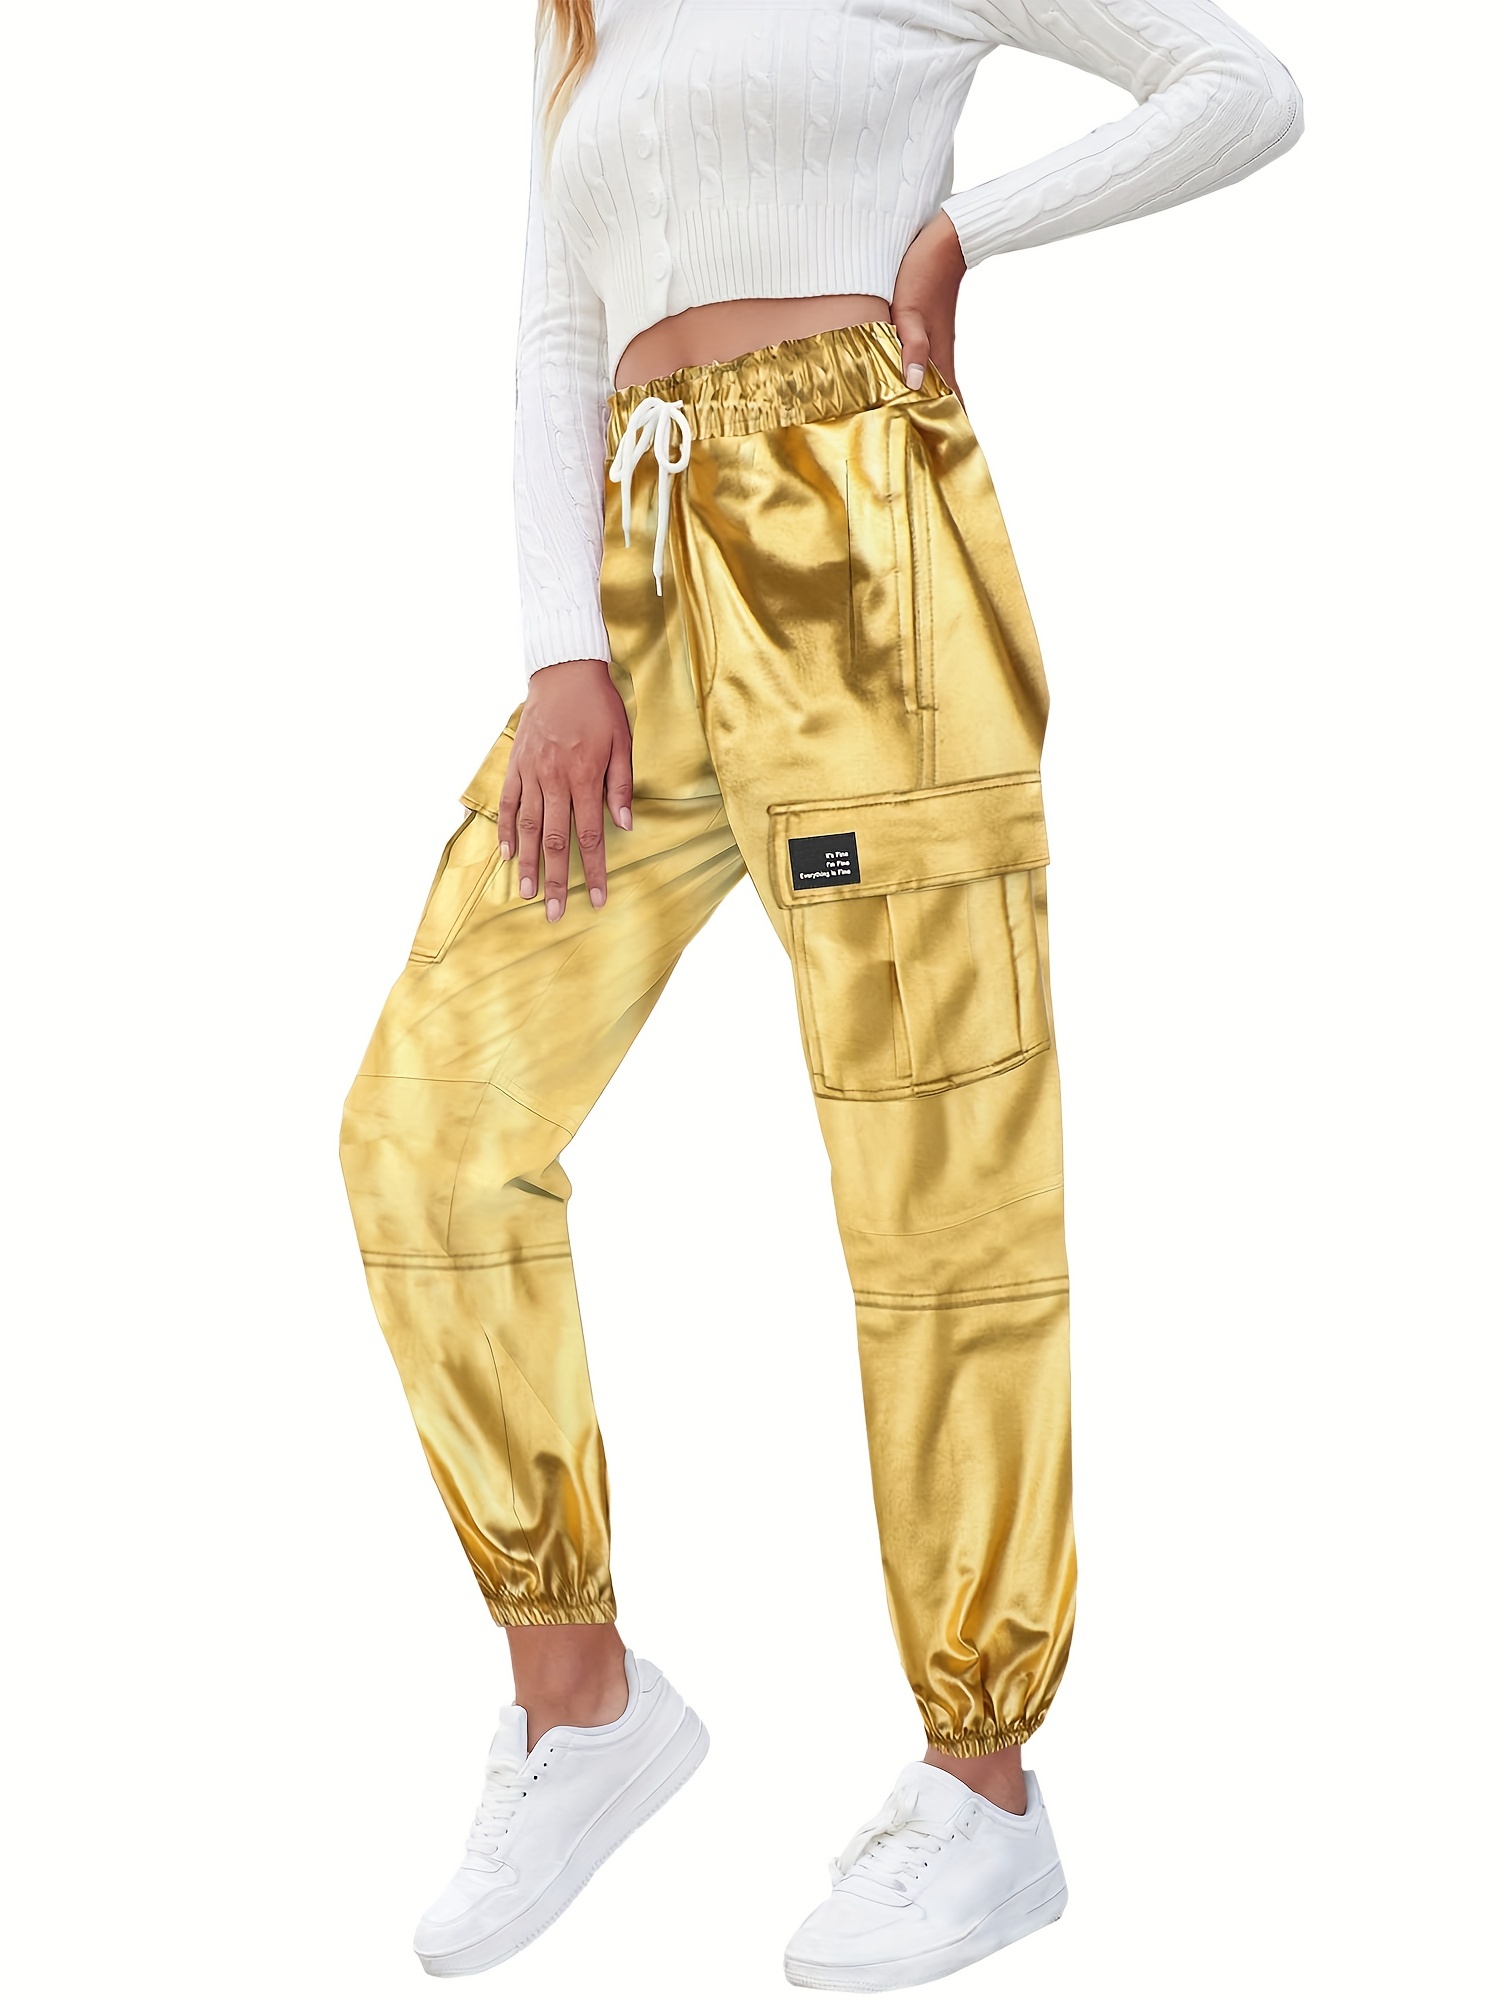 Boys And Girls Shiny Cargo Pants Street Style Elastic Belt Multi-pocket  Fashion Jogger Pants